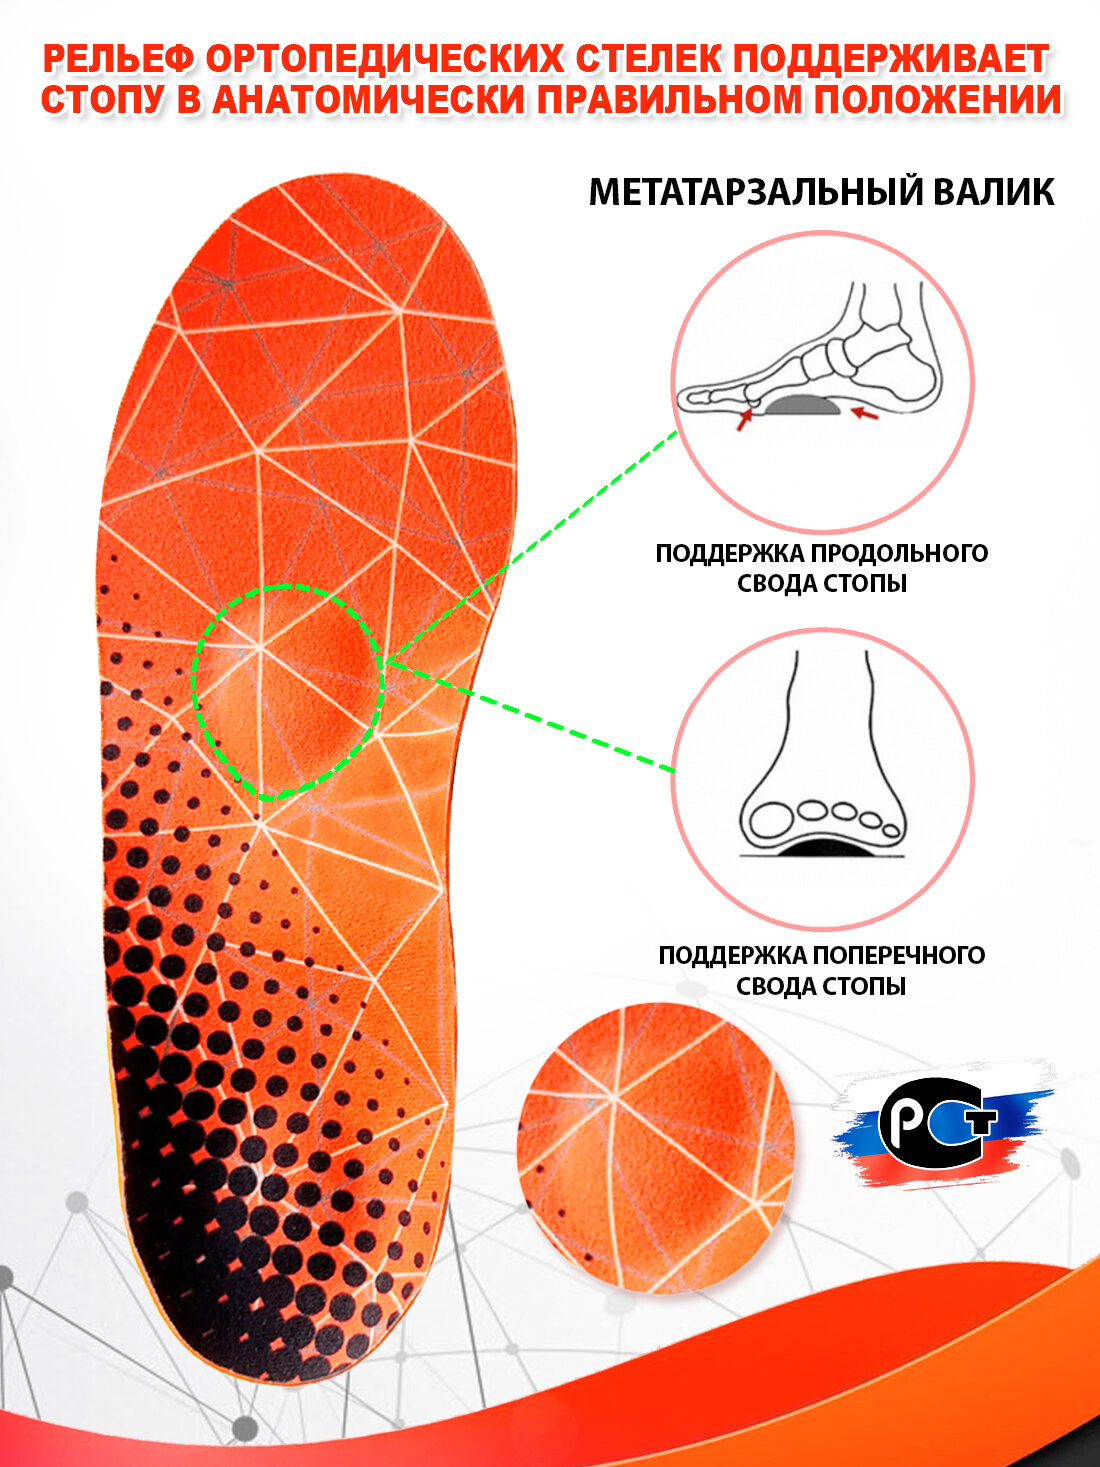 Стельки ортопедические спортивные Super Feet М (40-43) для обуви при плоскостопии